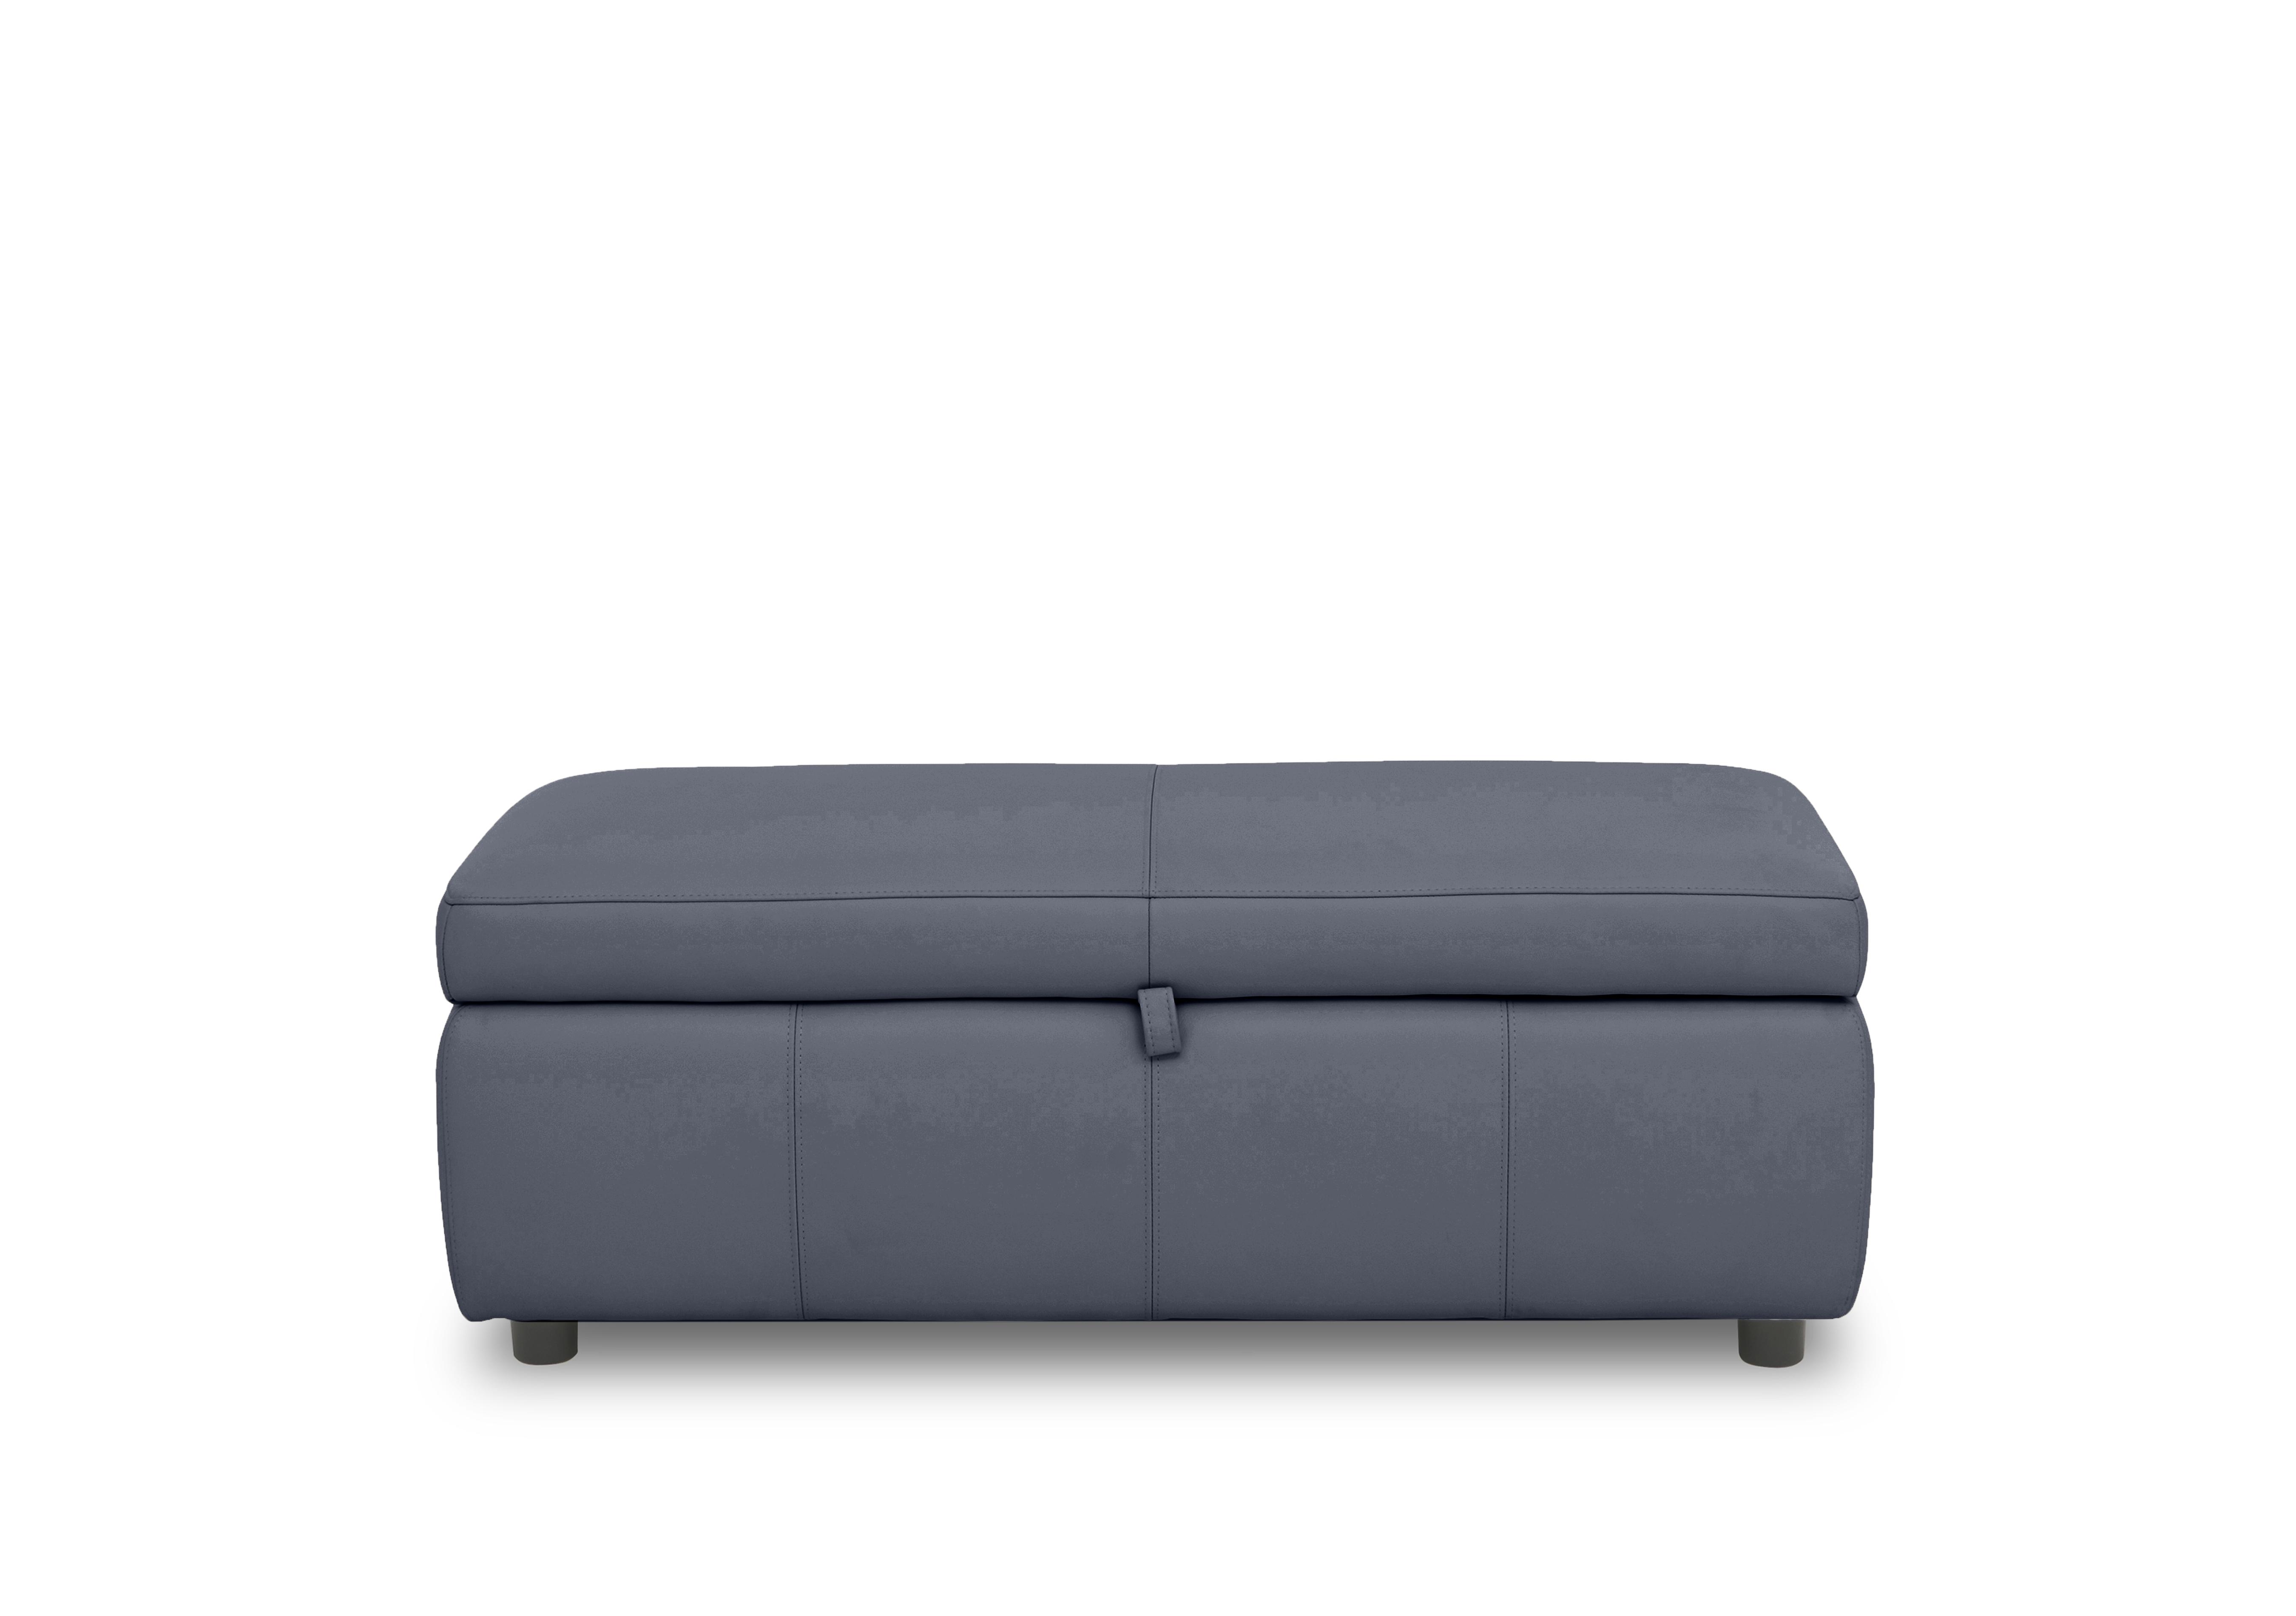 Stark 120cm Leather Blanket Box in Bv-313e Ocean Blue on Furniture Village